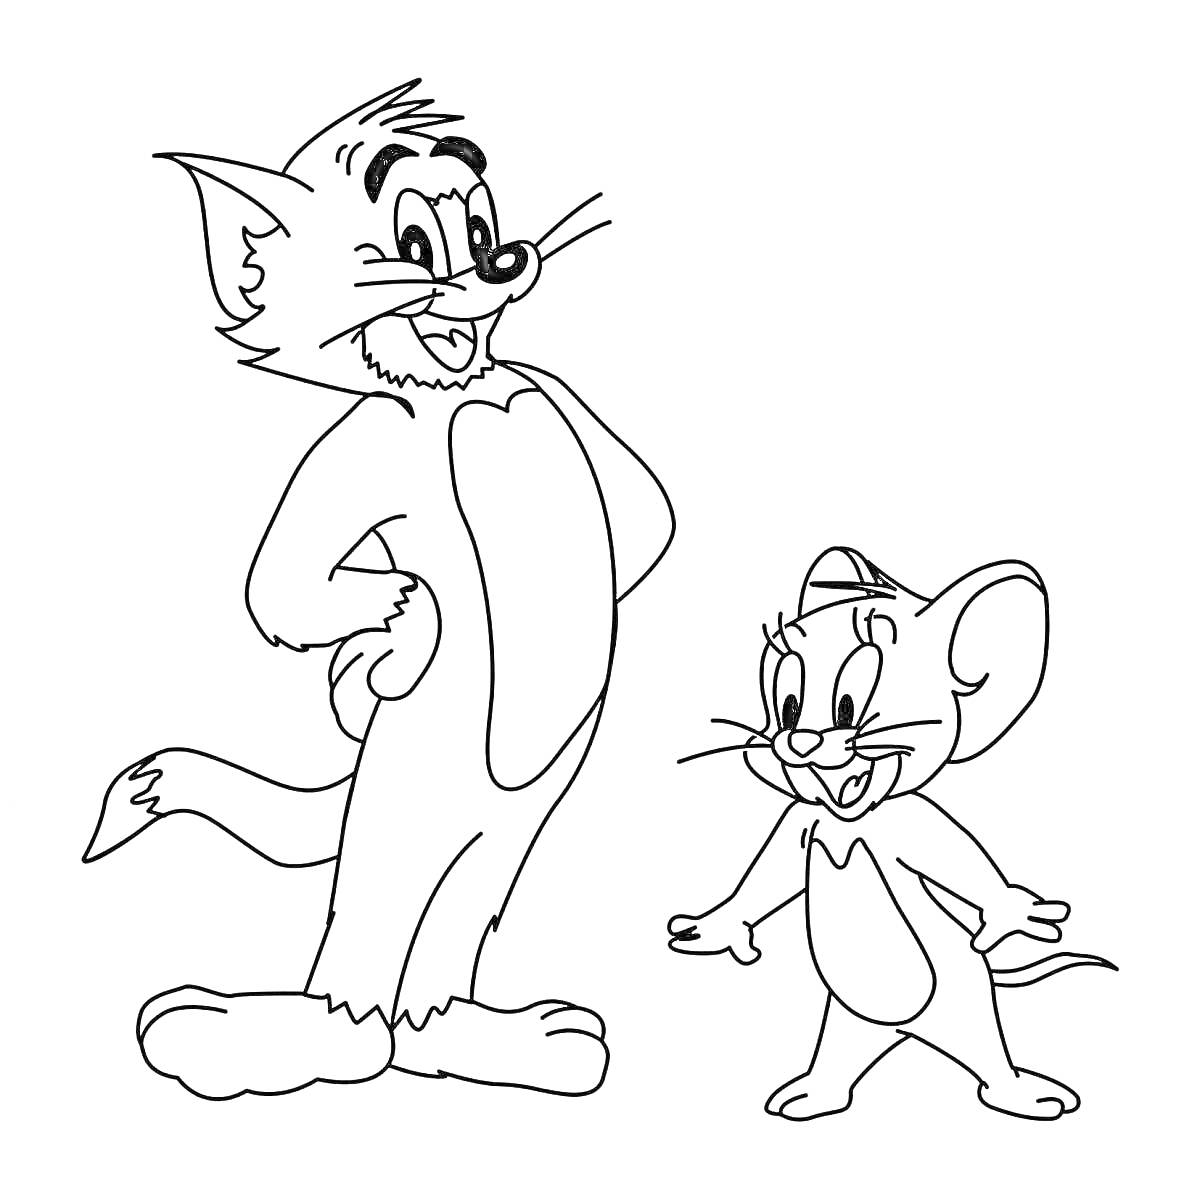 Раскраска Кот и мышь стоят рядом и смотрят друг на друга